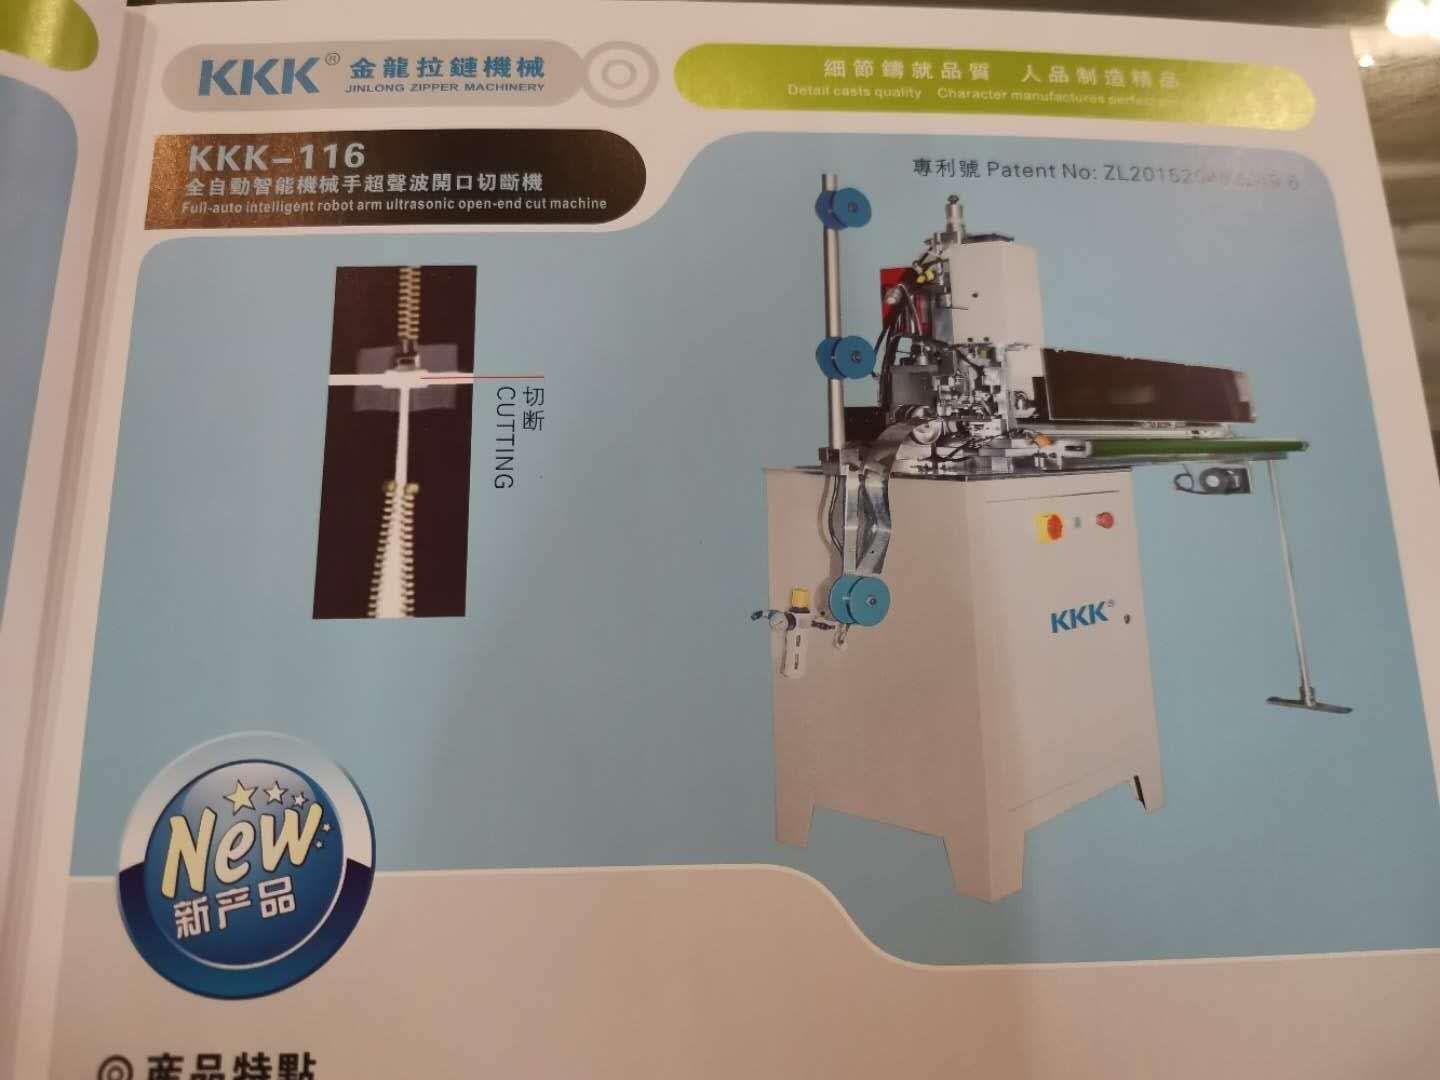 KKK—116
全自动智能机械手超声波闭口切断机产品图